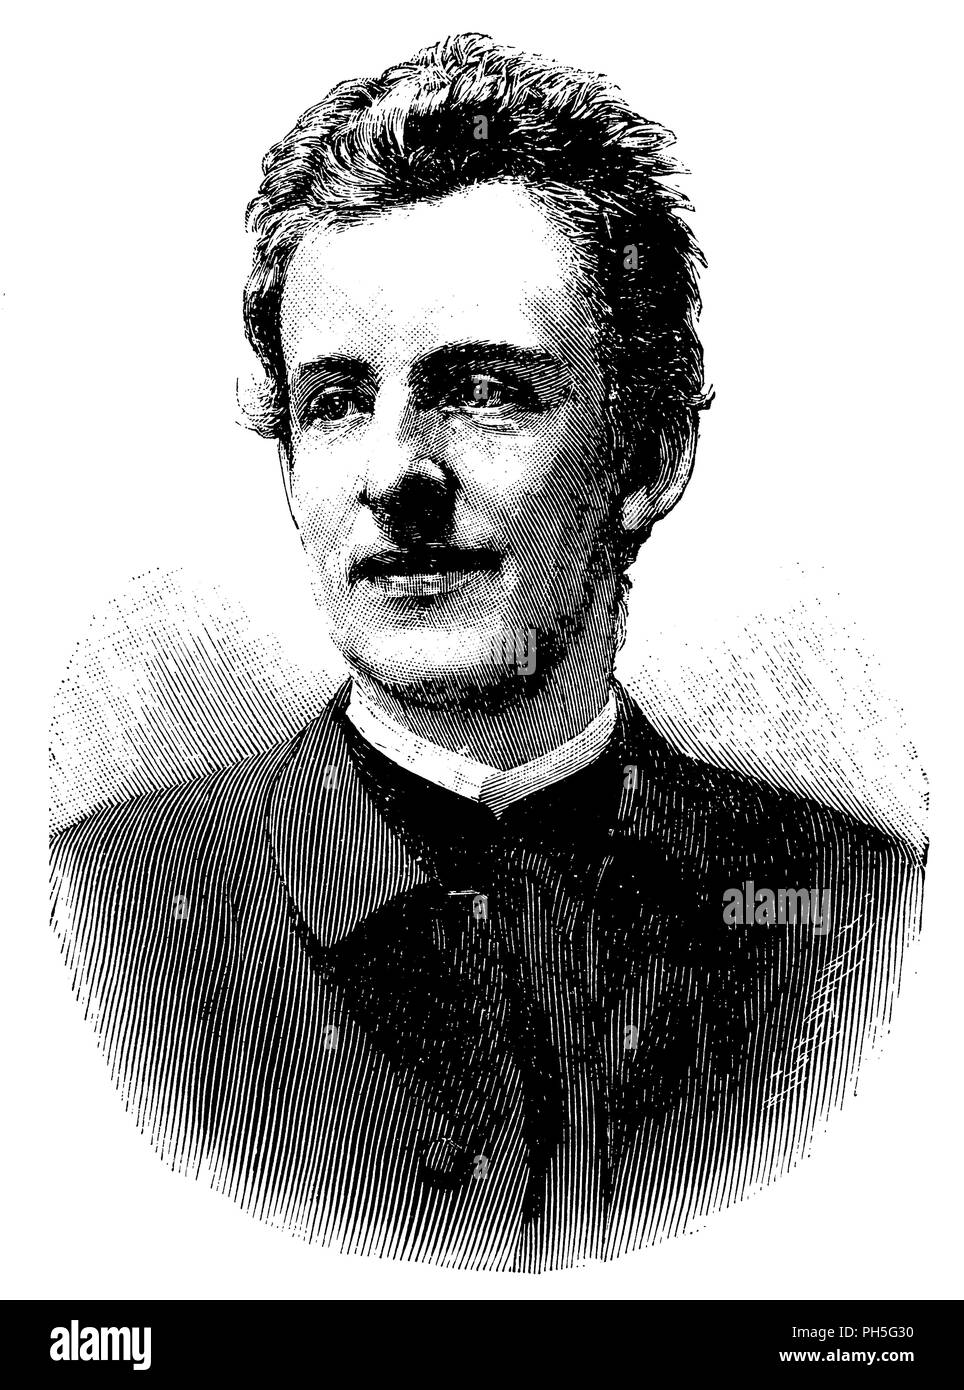 Gerhart Johann Robert Hauptmann (nato il 15 novembre 1862 in Salzbrunn superiore (Szczawno Zdrój -) in Slesia - † Giugno 6, 1946 in Agnetendorf (Agnieszków) in Slesia), drammaturgo tedesco e scrittore, 1895 Foto Stock